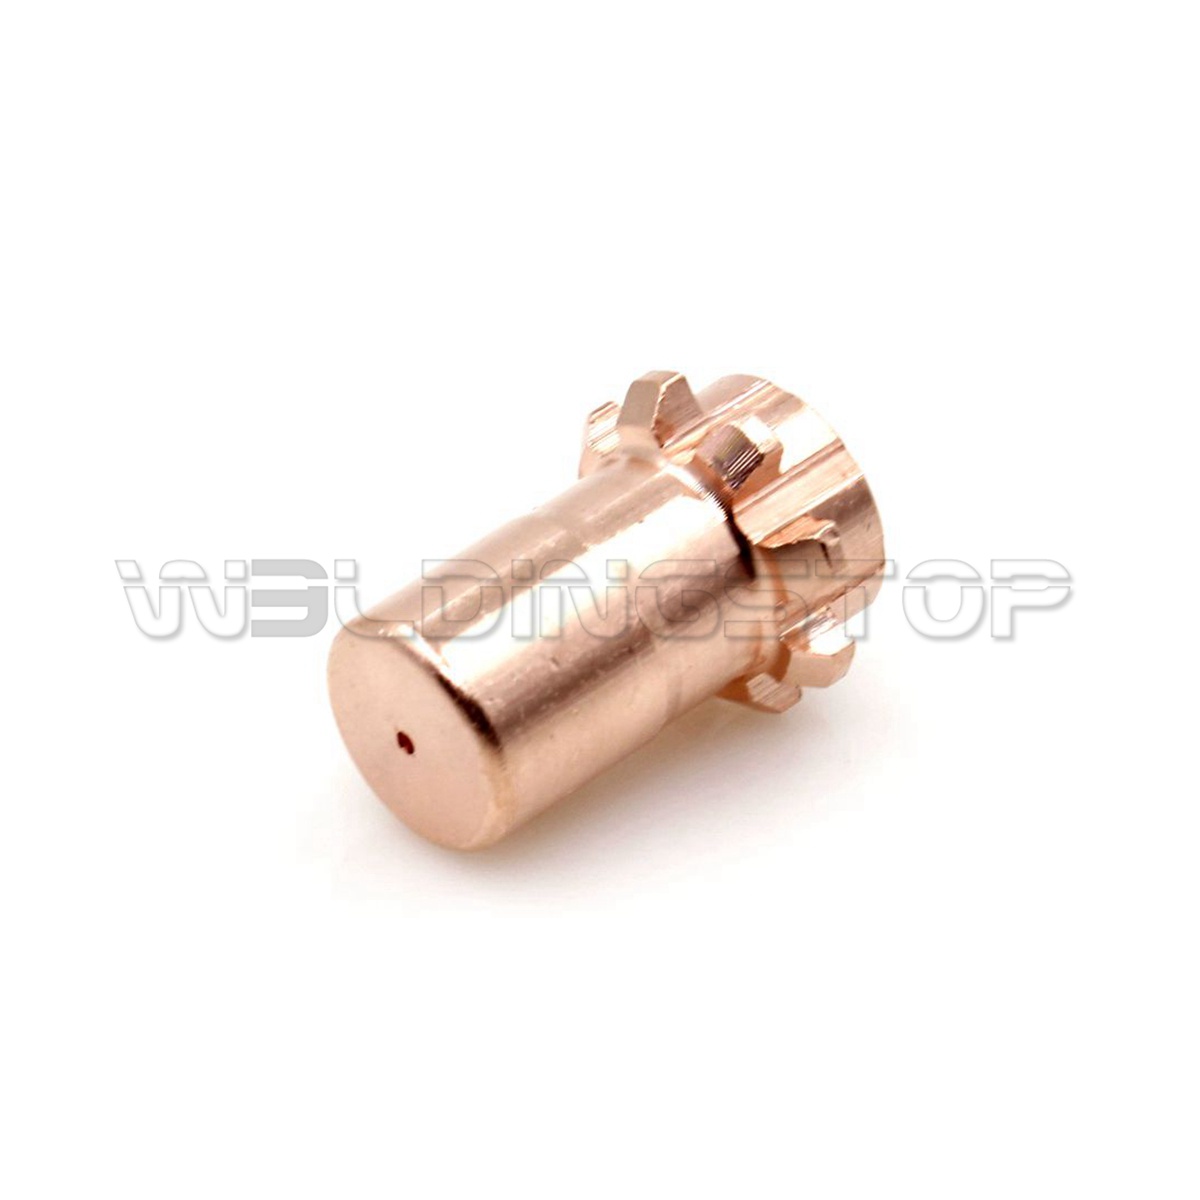 Lincoln Electric S22147-082D Vortech Nozzle for Gouging ProCut 55 KP2062-5B1 5pc 